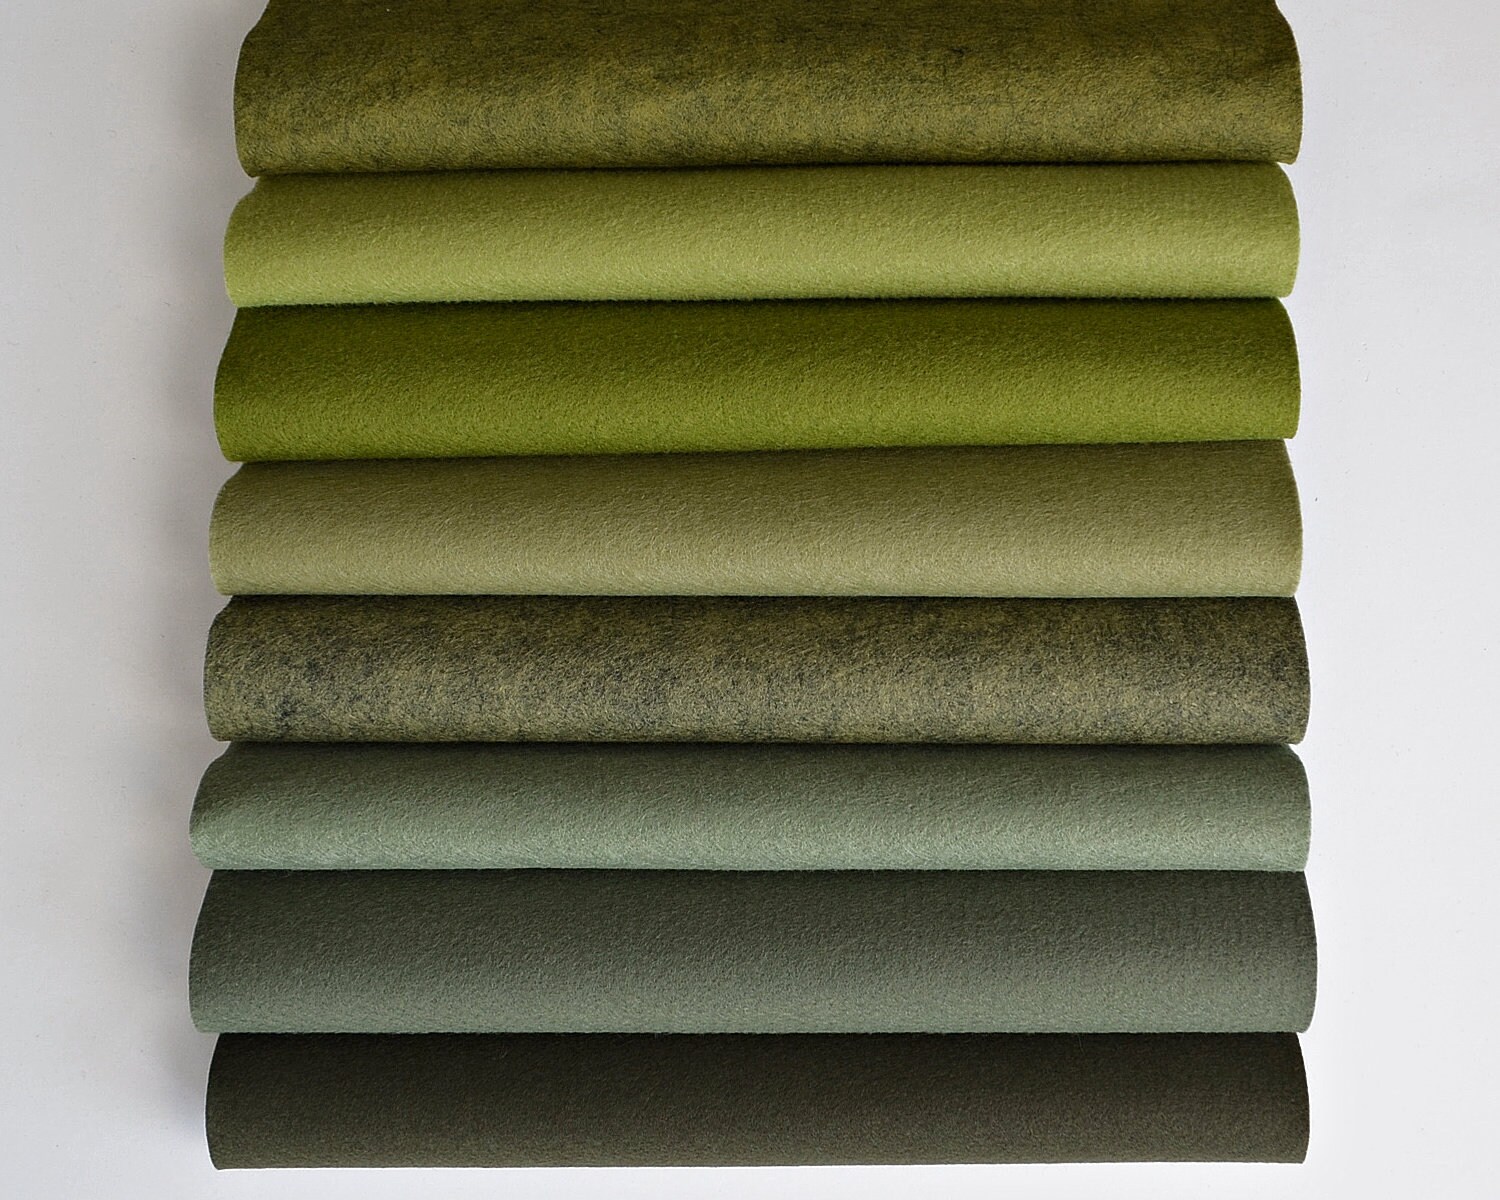 LODEN Wool Felt, Felt by the Half Yard, Merino Wool Felt, Green